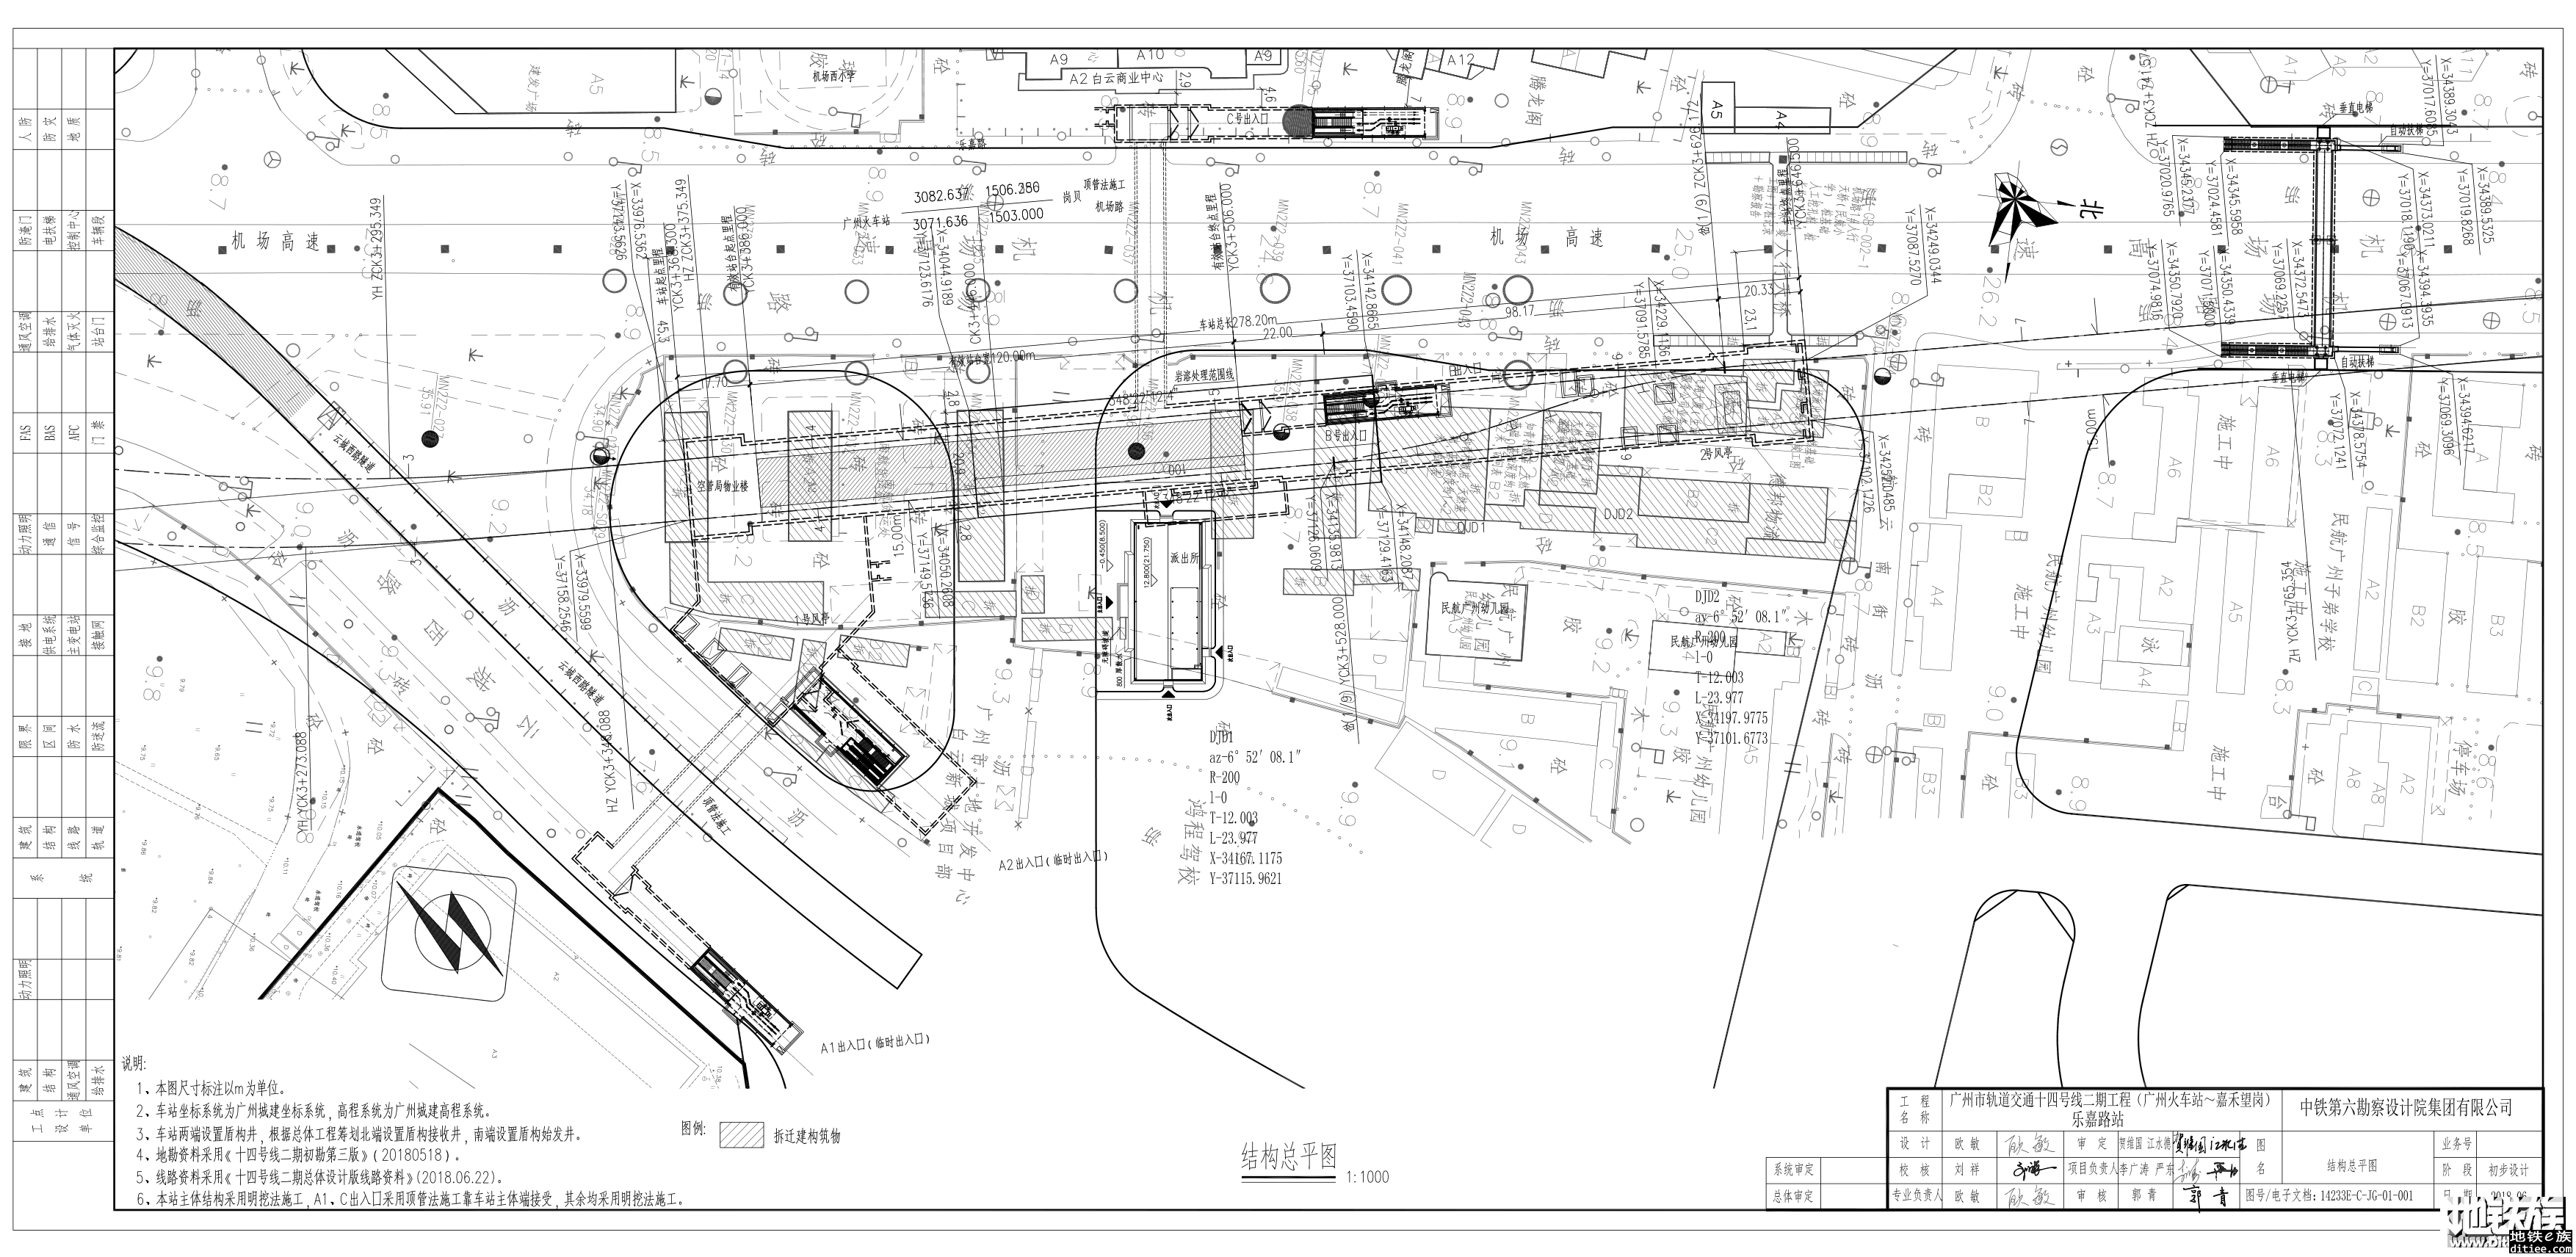 乐嘉路地铁站位于机场路西则的地铁口开始勘探